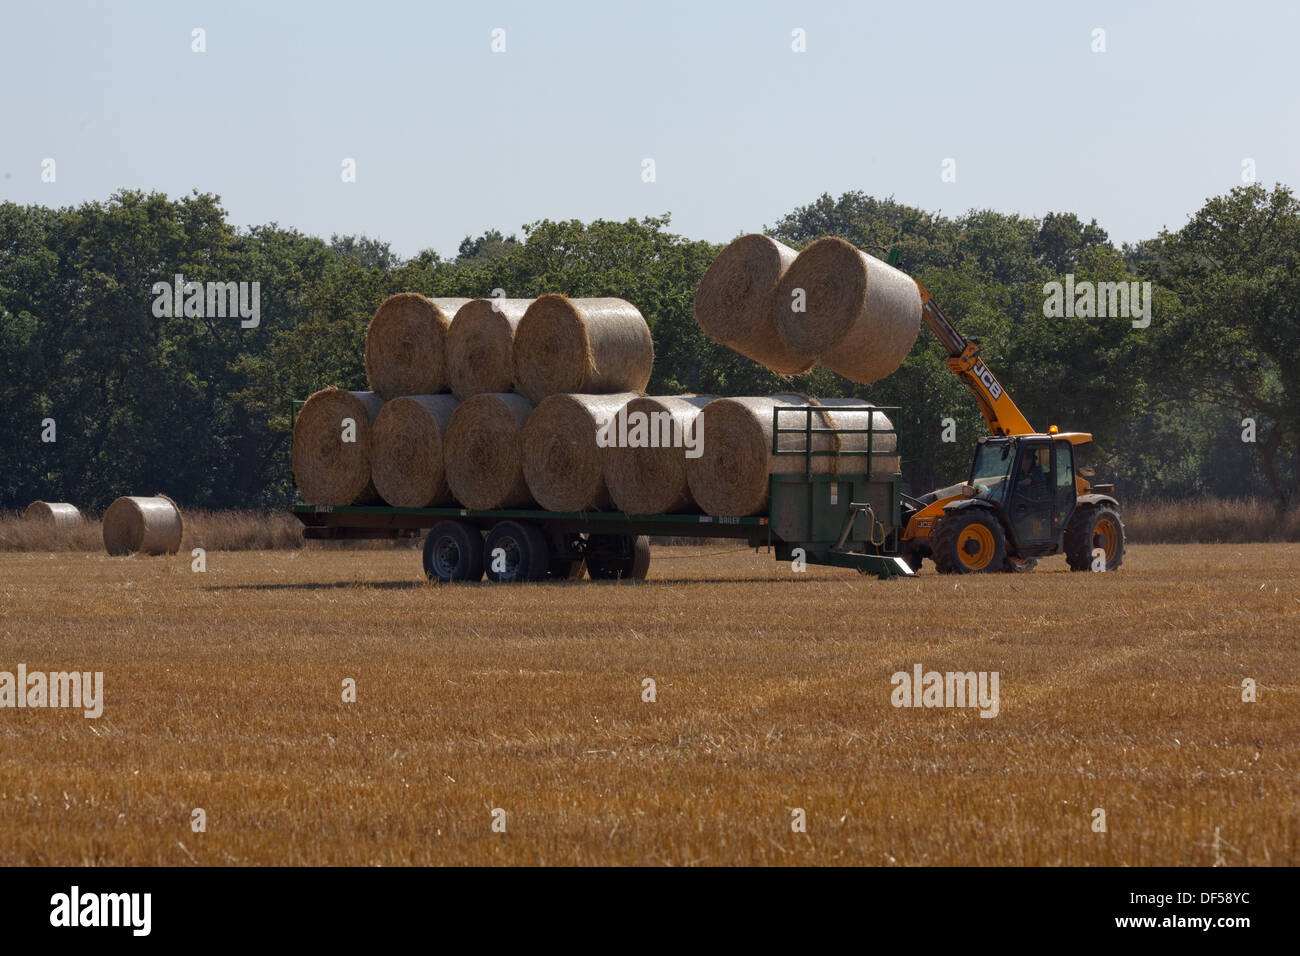 Ernte. Nach Combine Harvester geschnitten hat und aus Getreide gedroschen, eine sekundäre Lader Fahrzeug sammelt Ballen Stroh für die Entfernung. Stockfoto